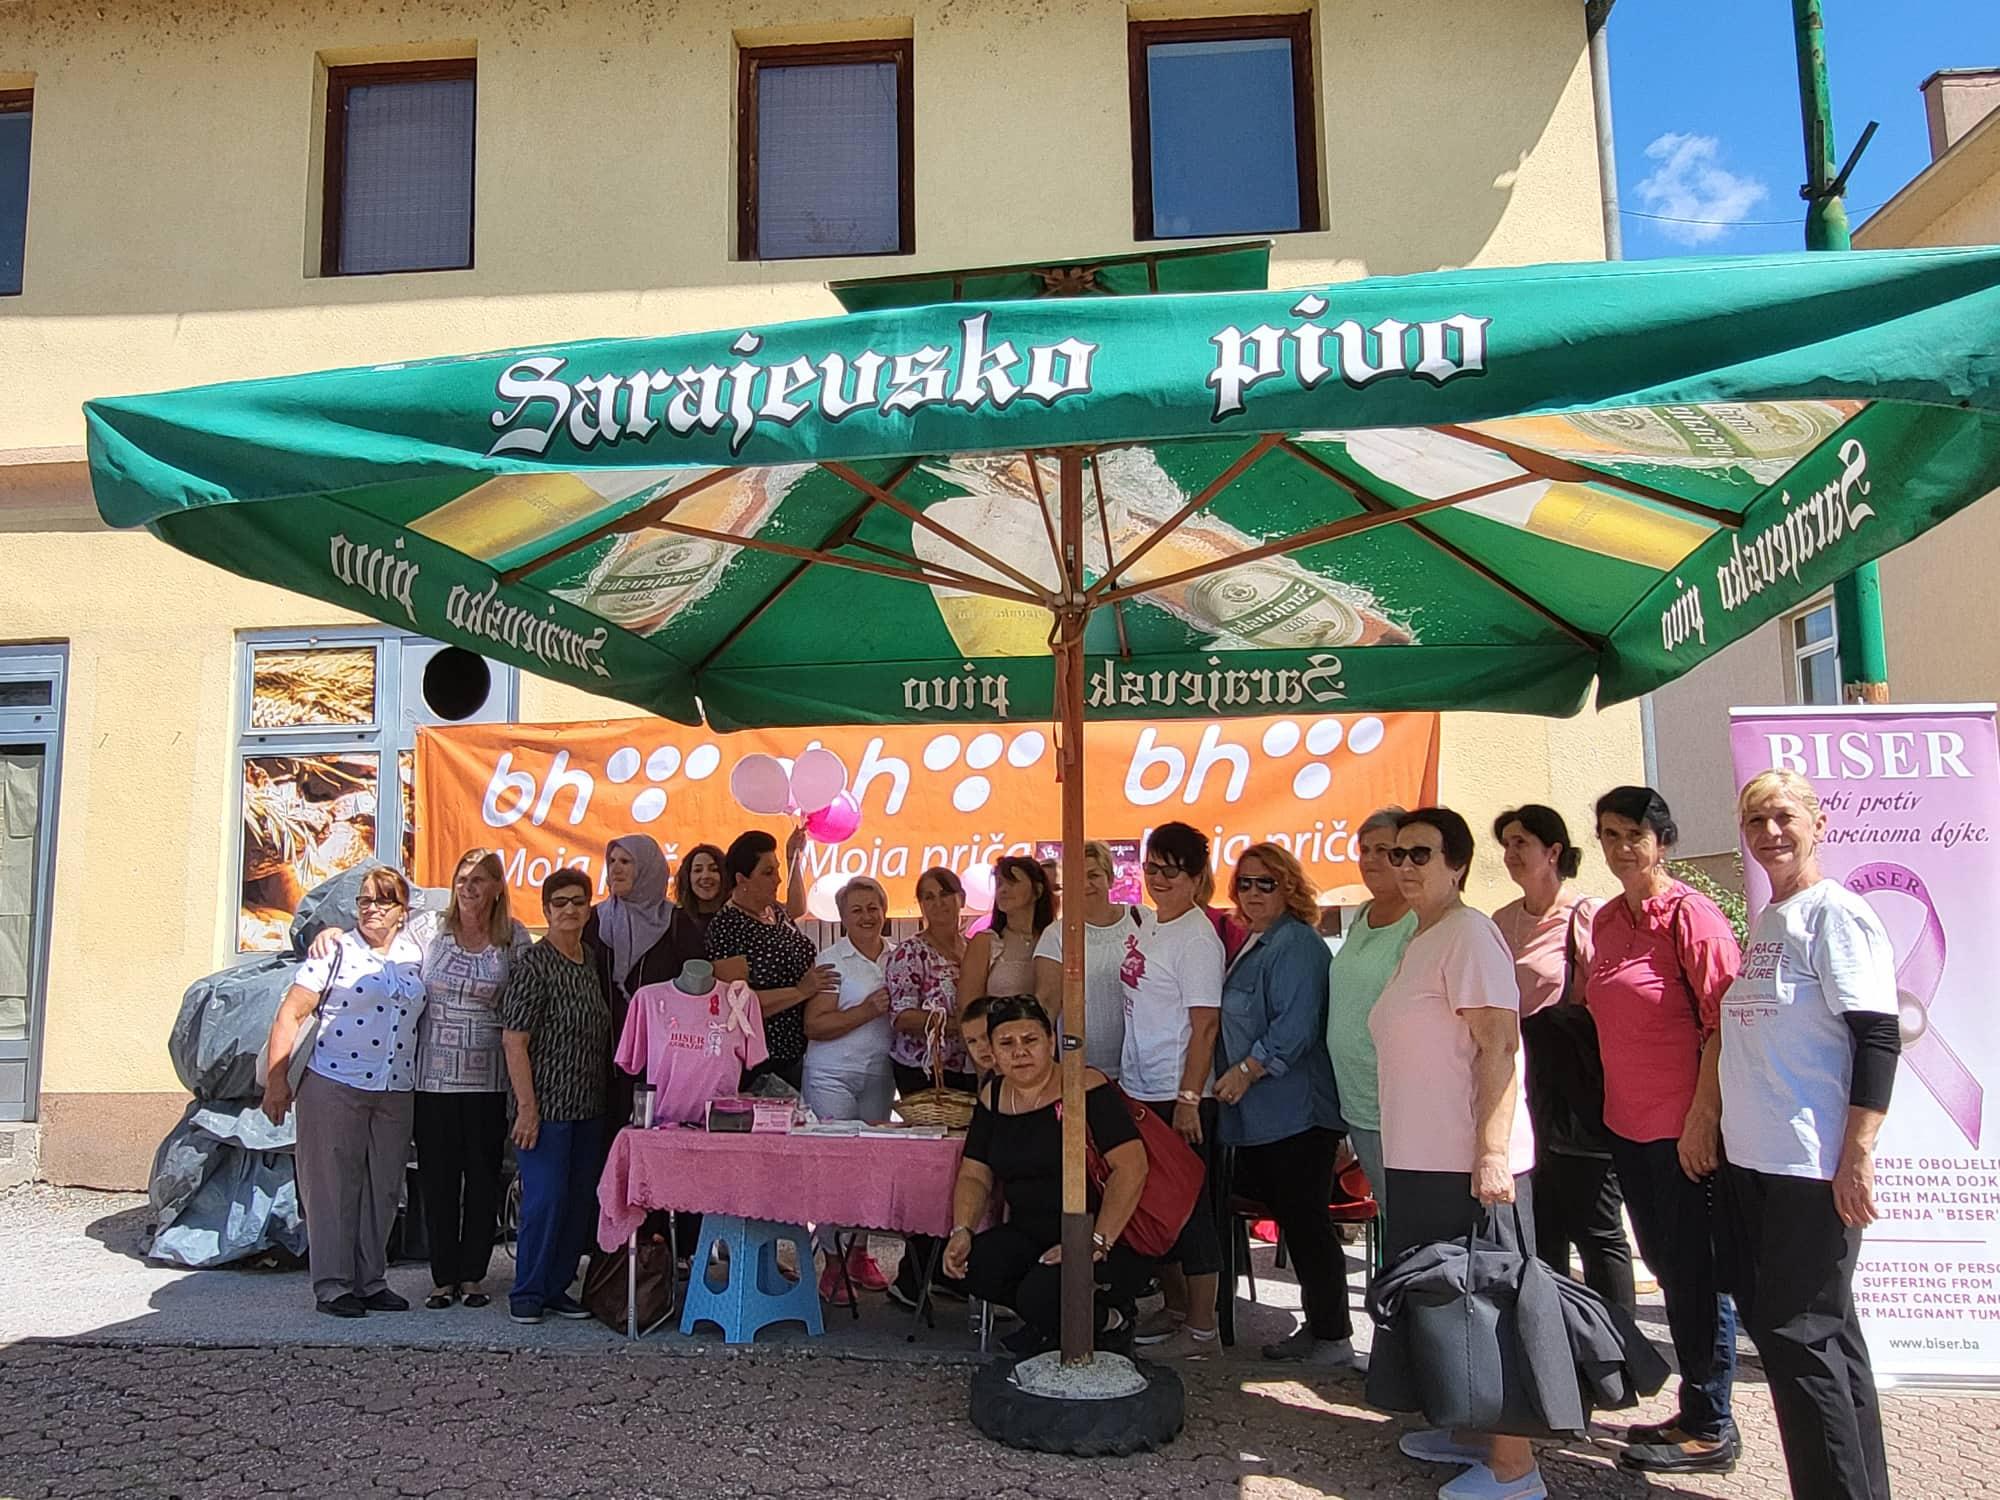 Akcija Udruženja "Biser" u Goraždu - Avaz